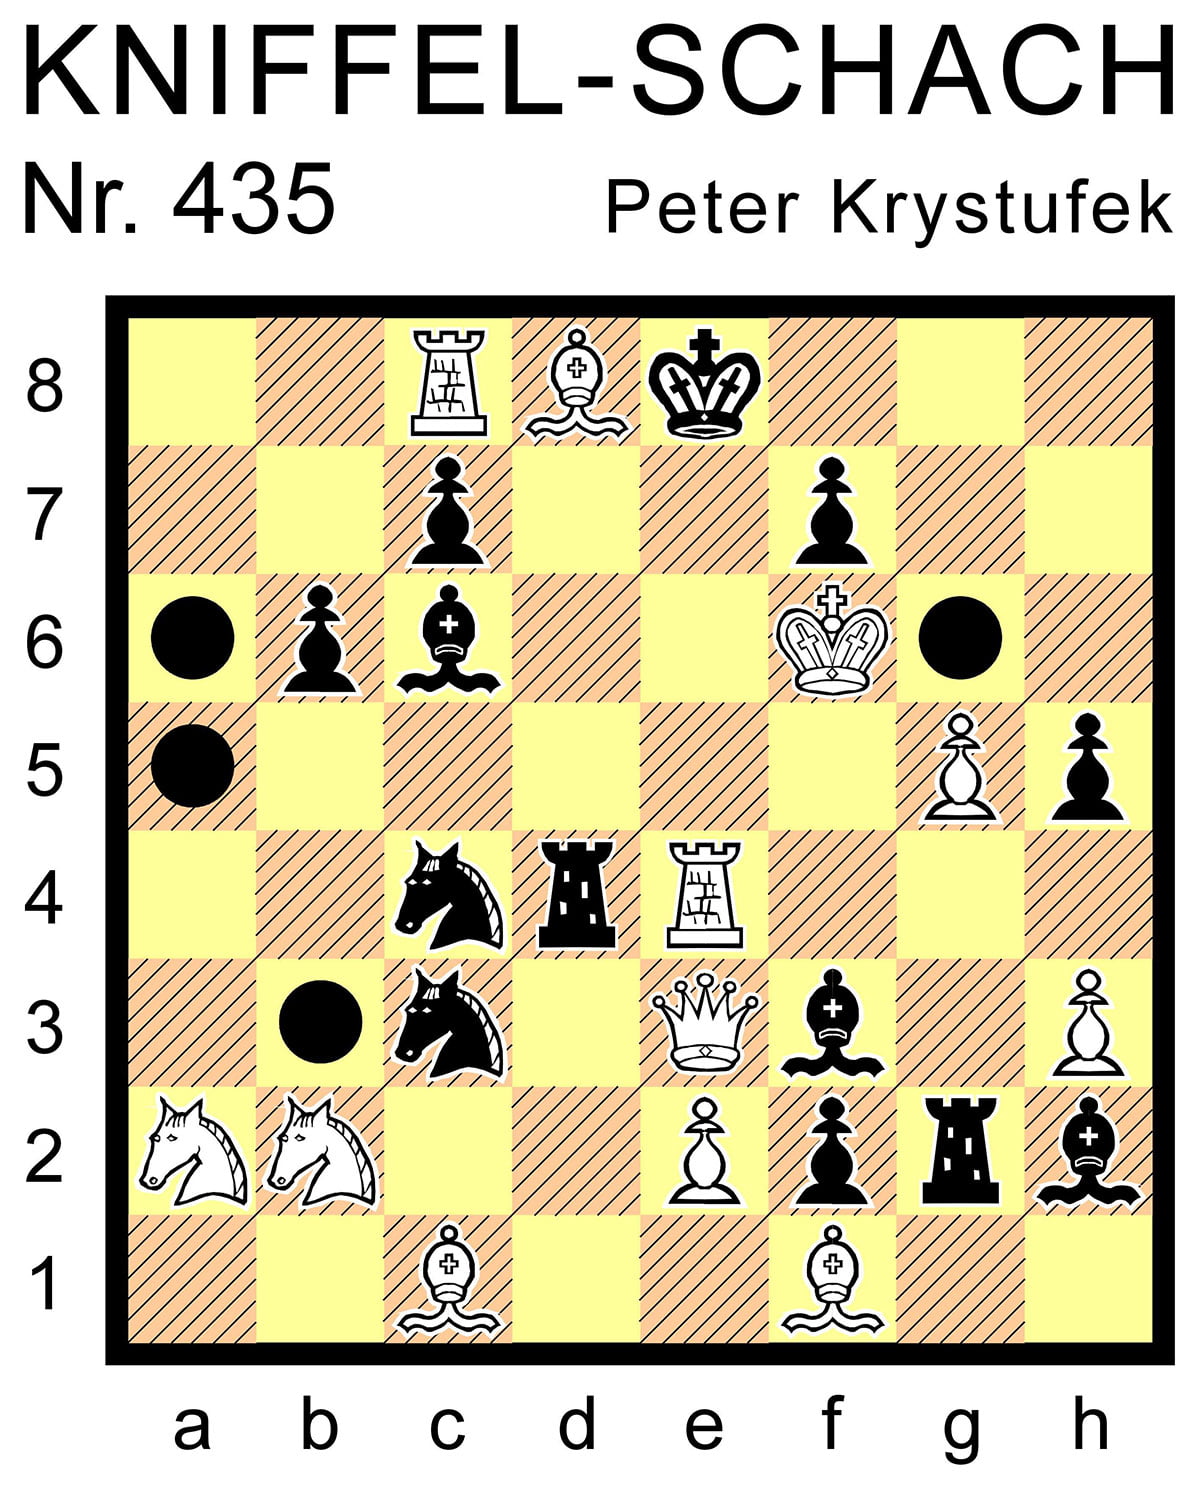 Kniffel-Schach Nr. 435